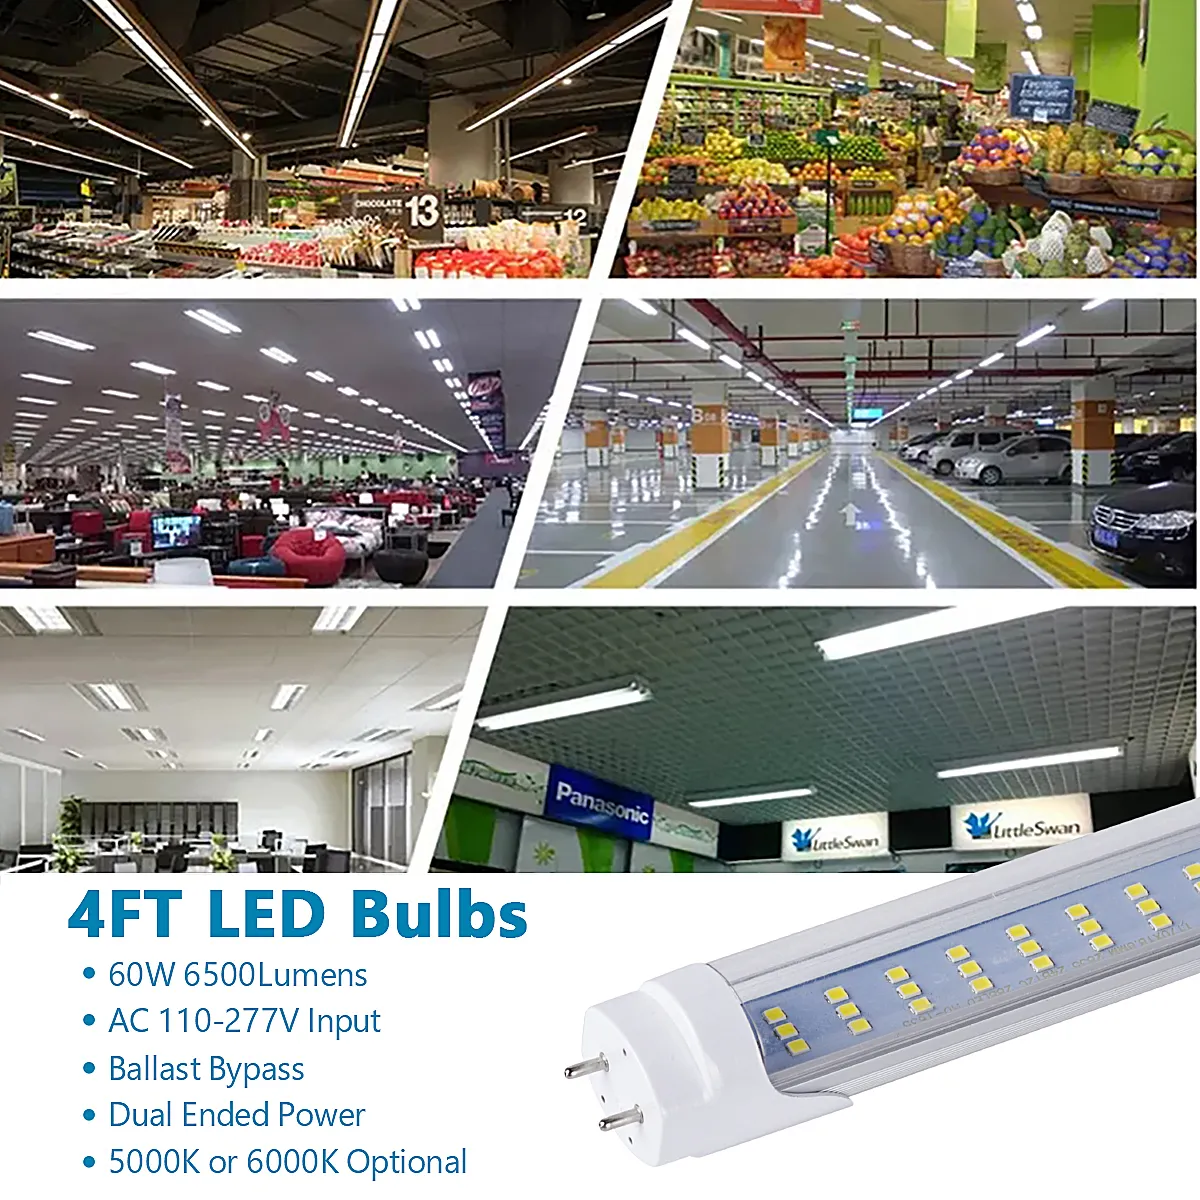 LED 가벼운 튜브 4ft 60w, 평면 3 행 LED 칩, 4 피트 형광등, 창고 가게 빛에 대 한 LED 교체 전구